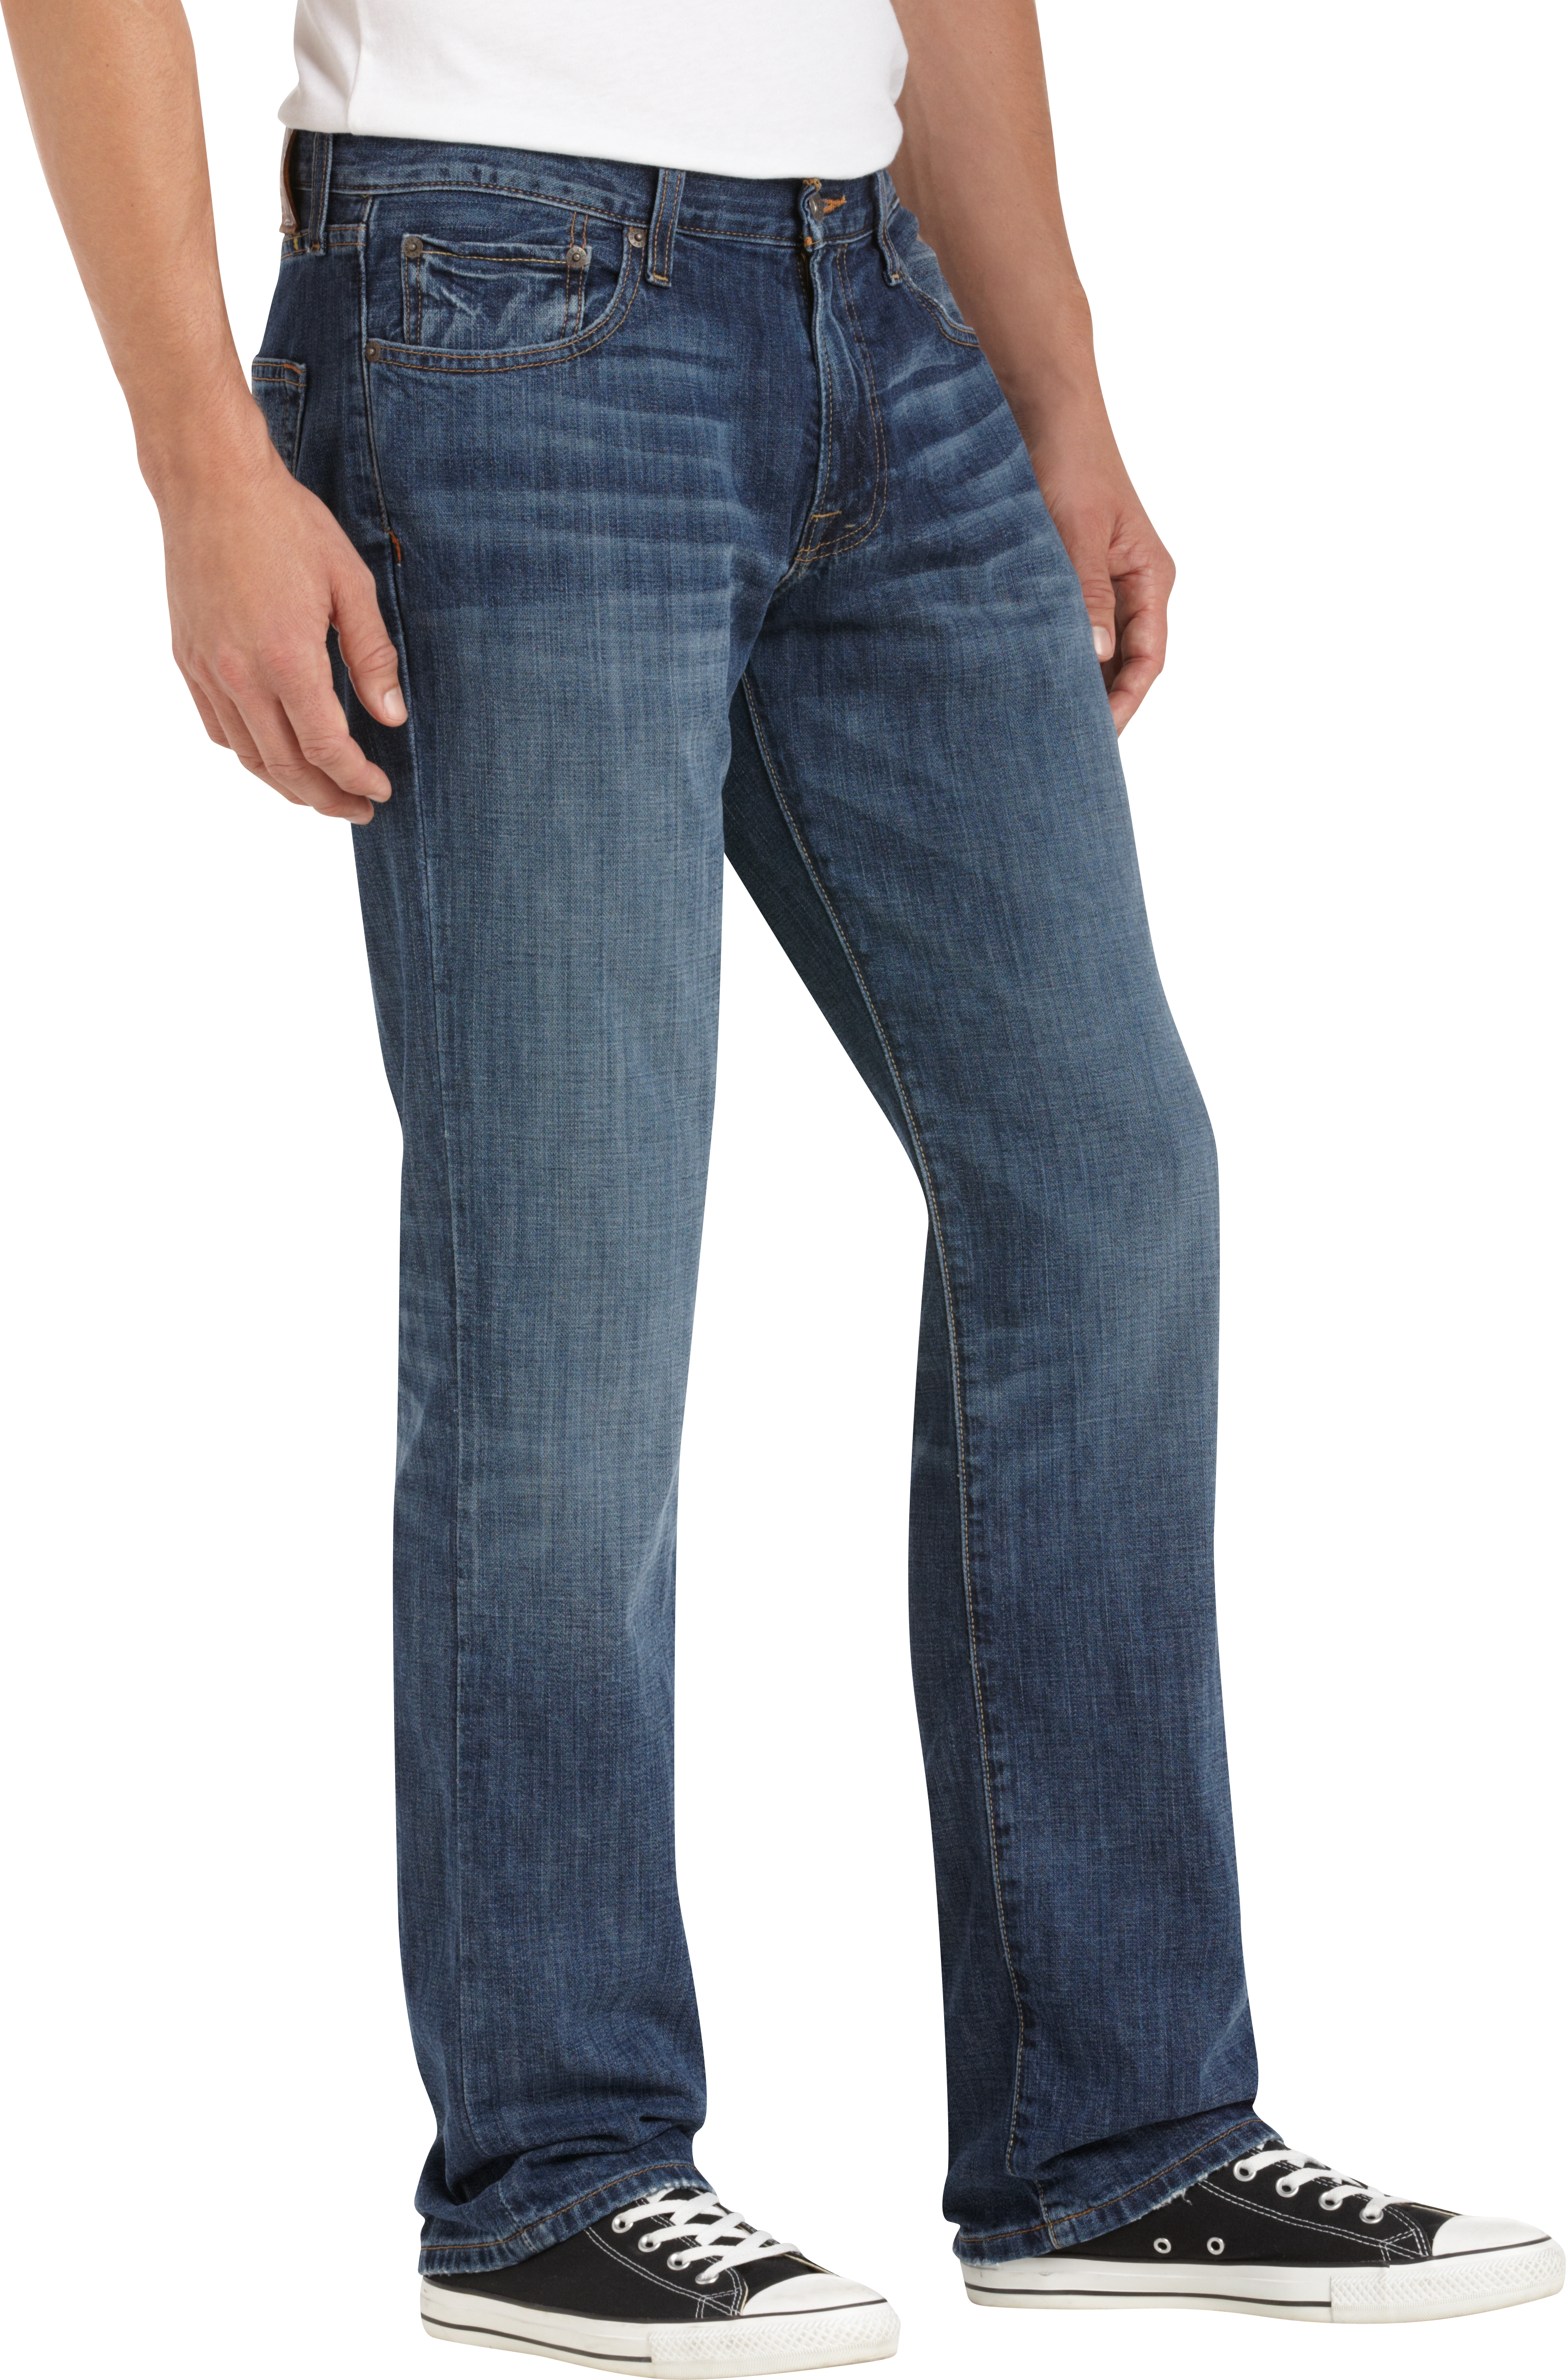 Mens Soft Jeans | Men's Wearhouse | Male Soft Jeans, Mens Soft Denim Pants